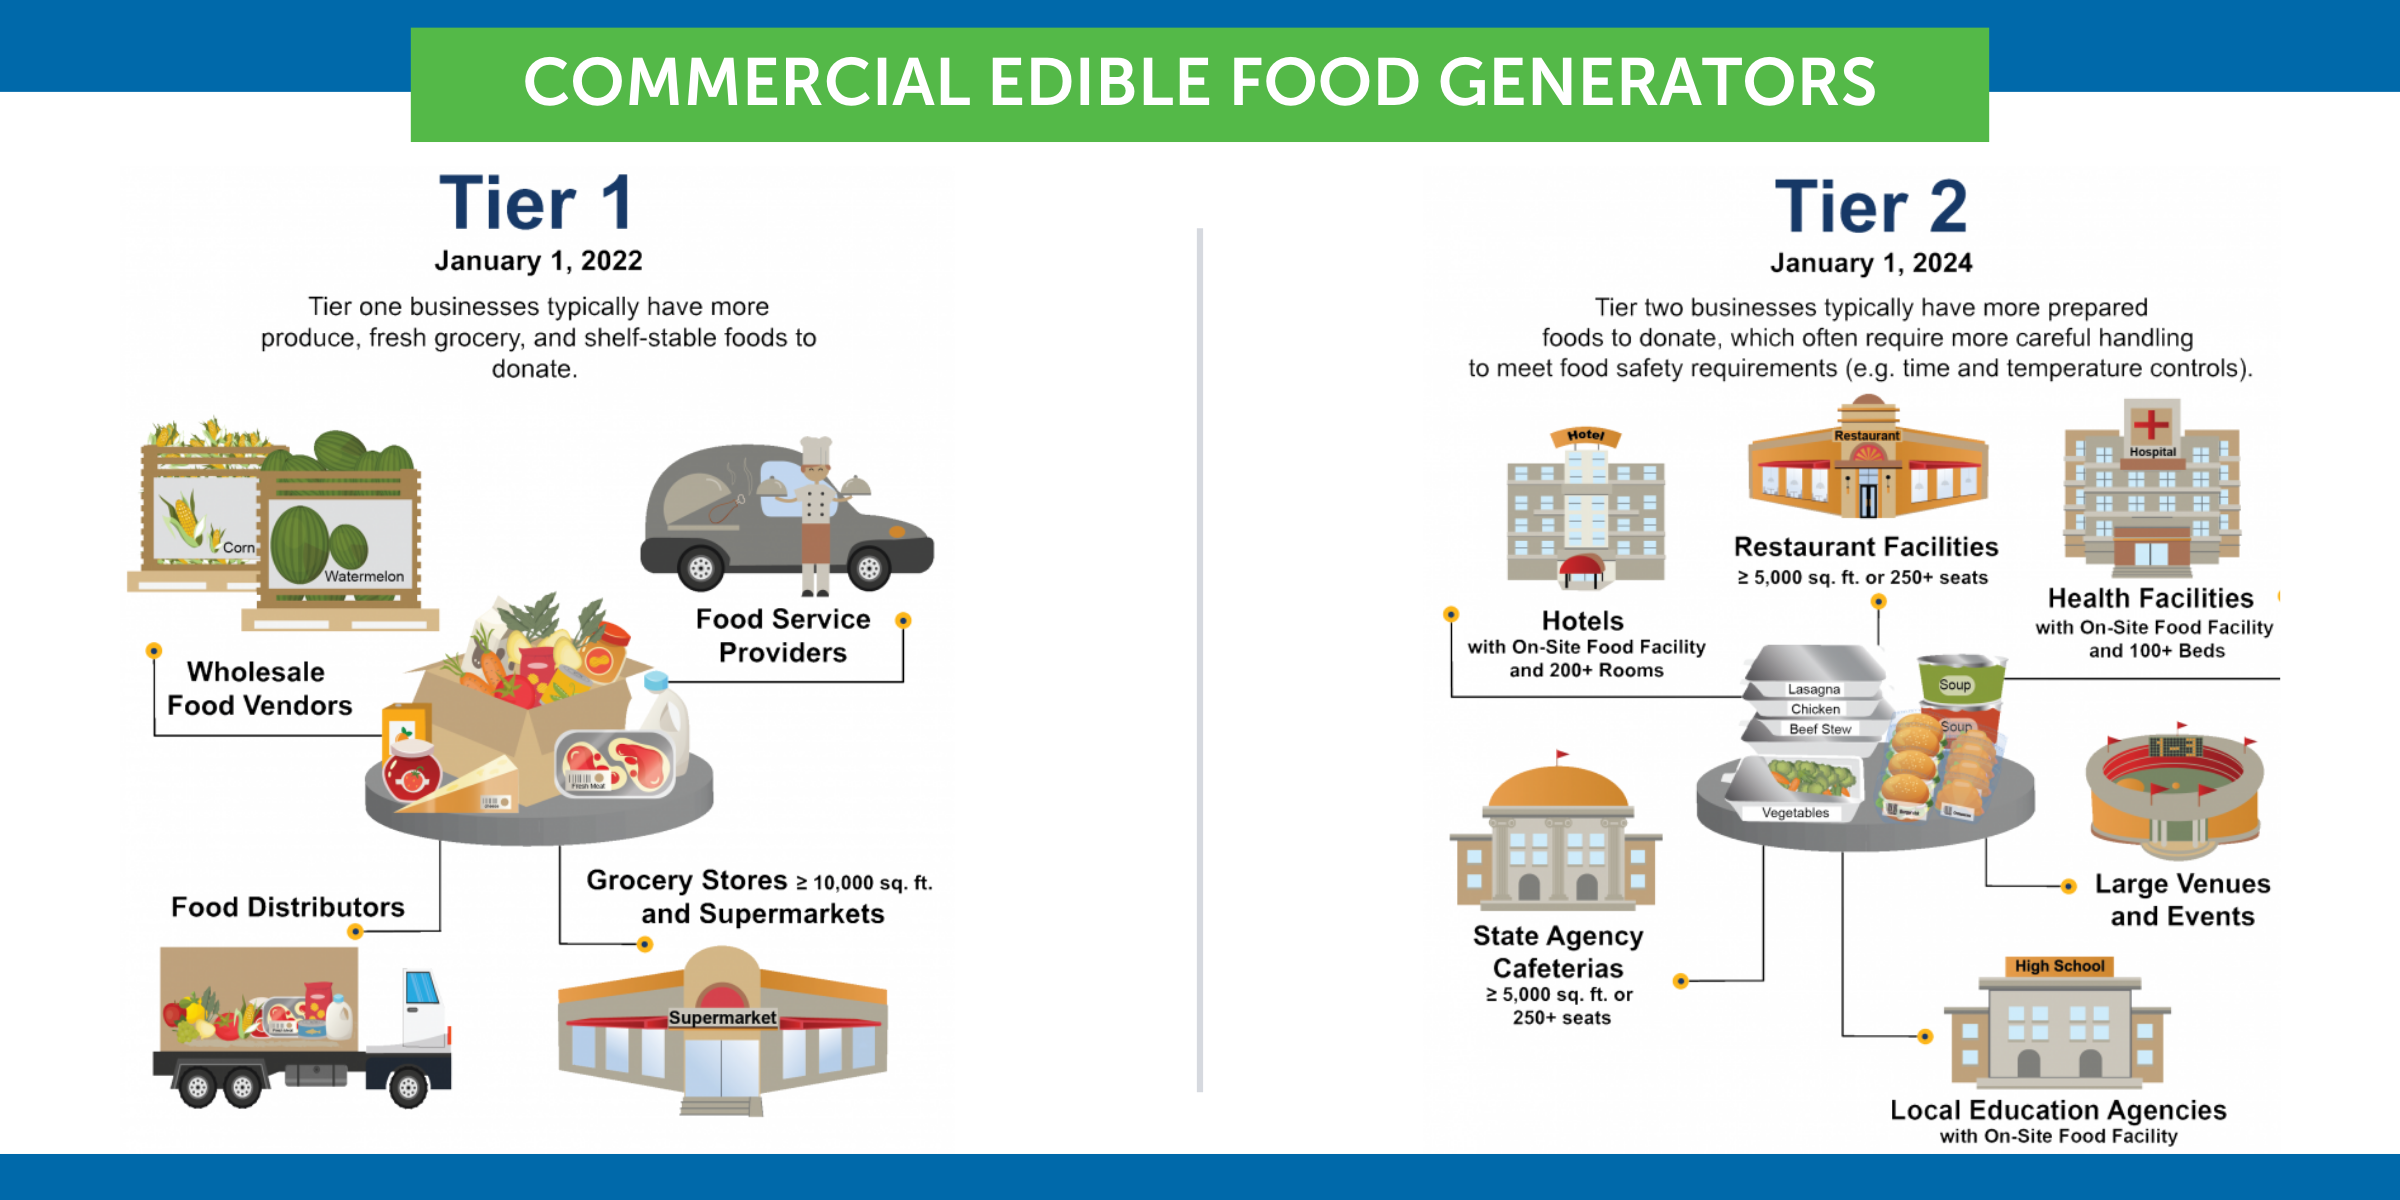 Commercial Edible Food Generators Tier 1 & Tier 2